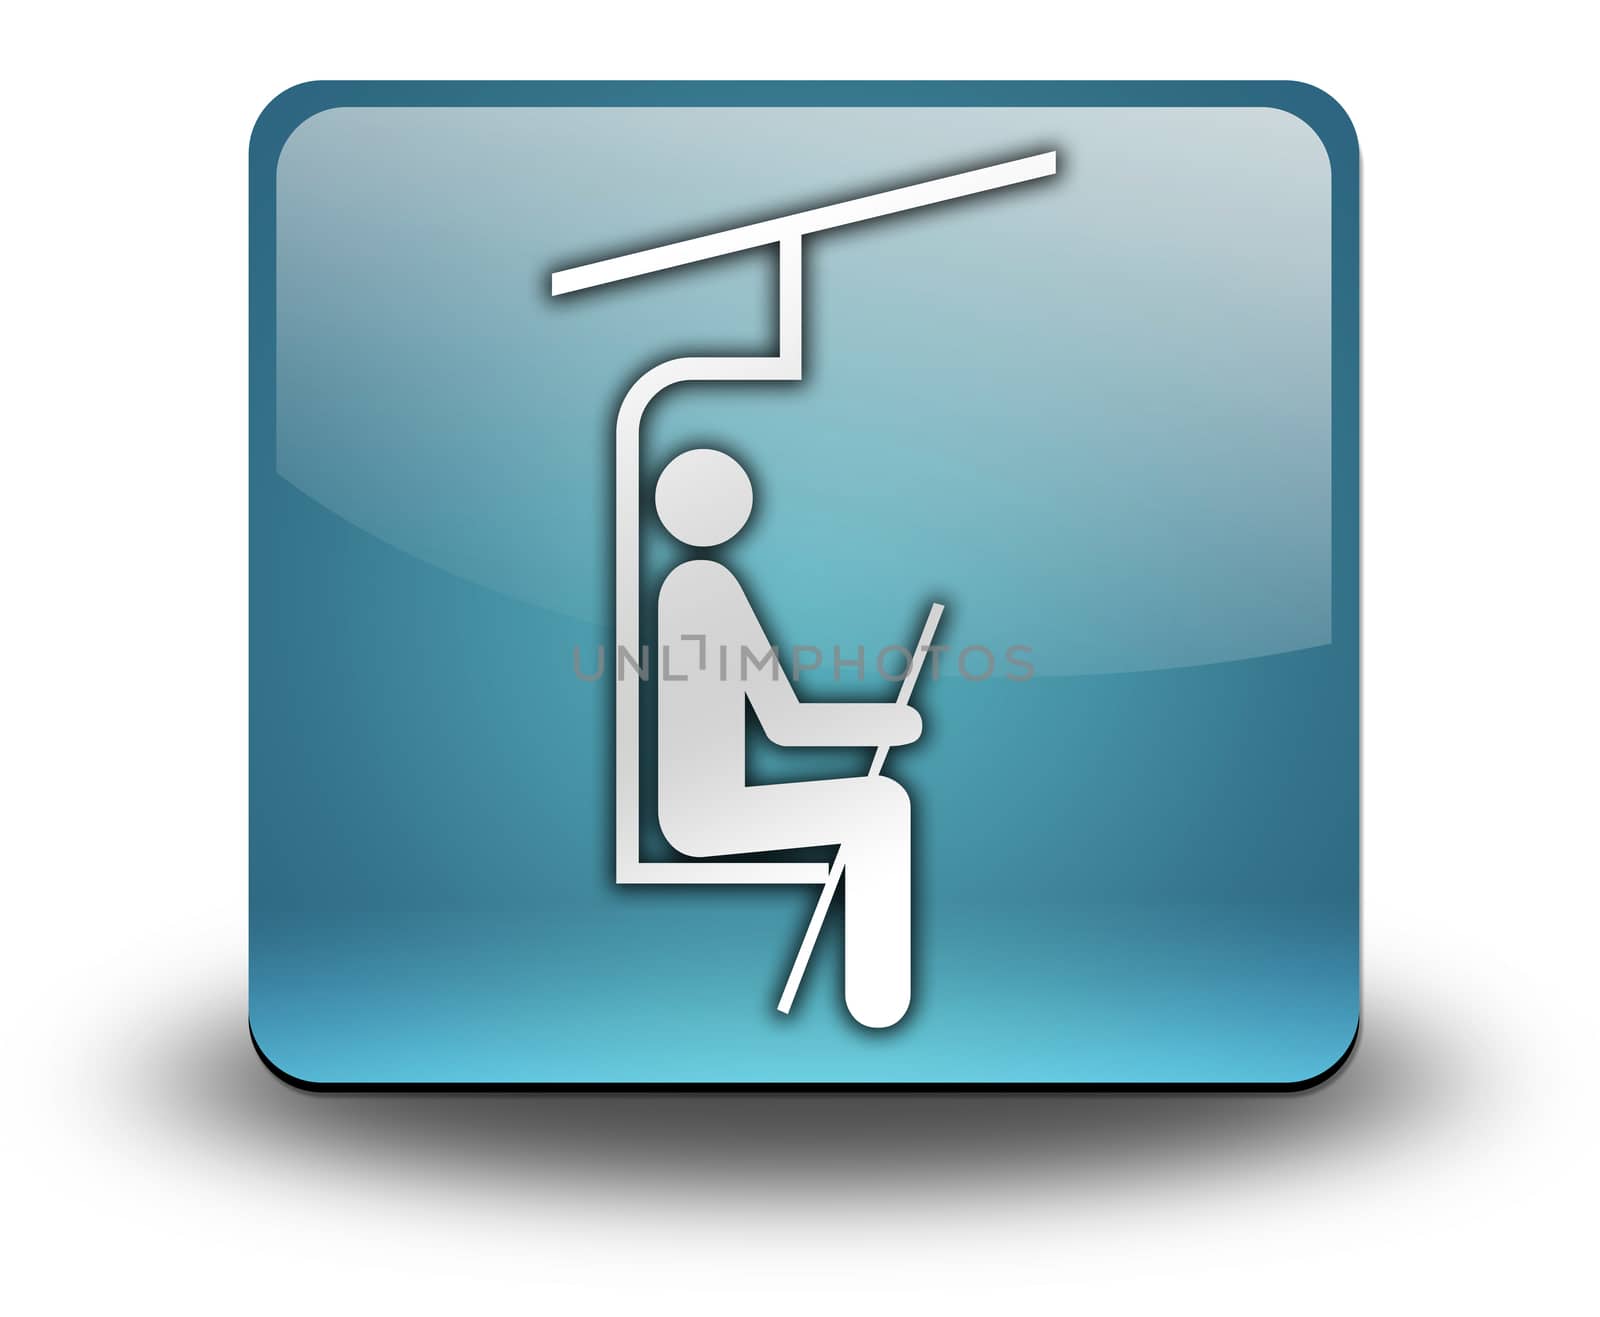 Icon, Button, Pictogram with Ski Lift symbol